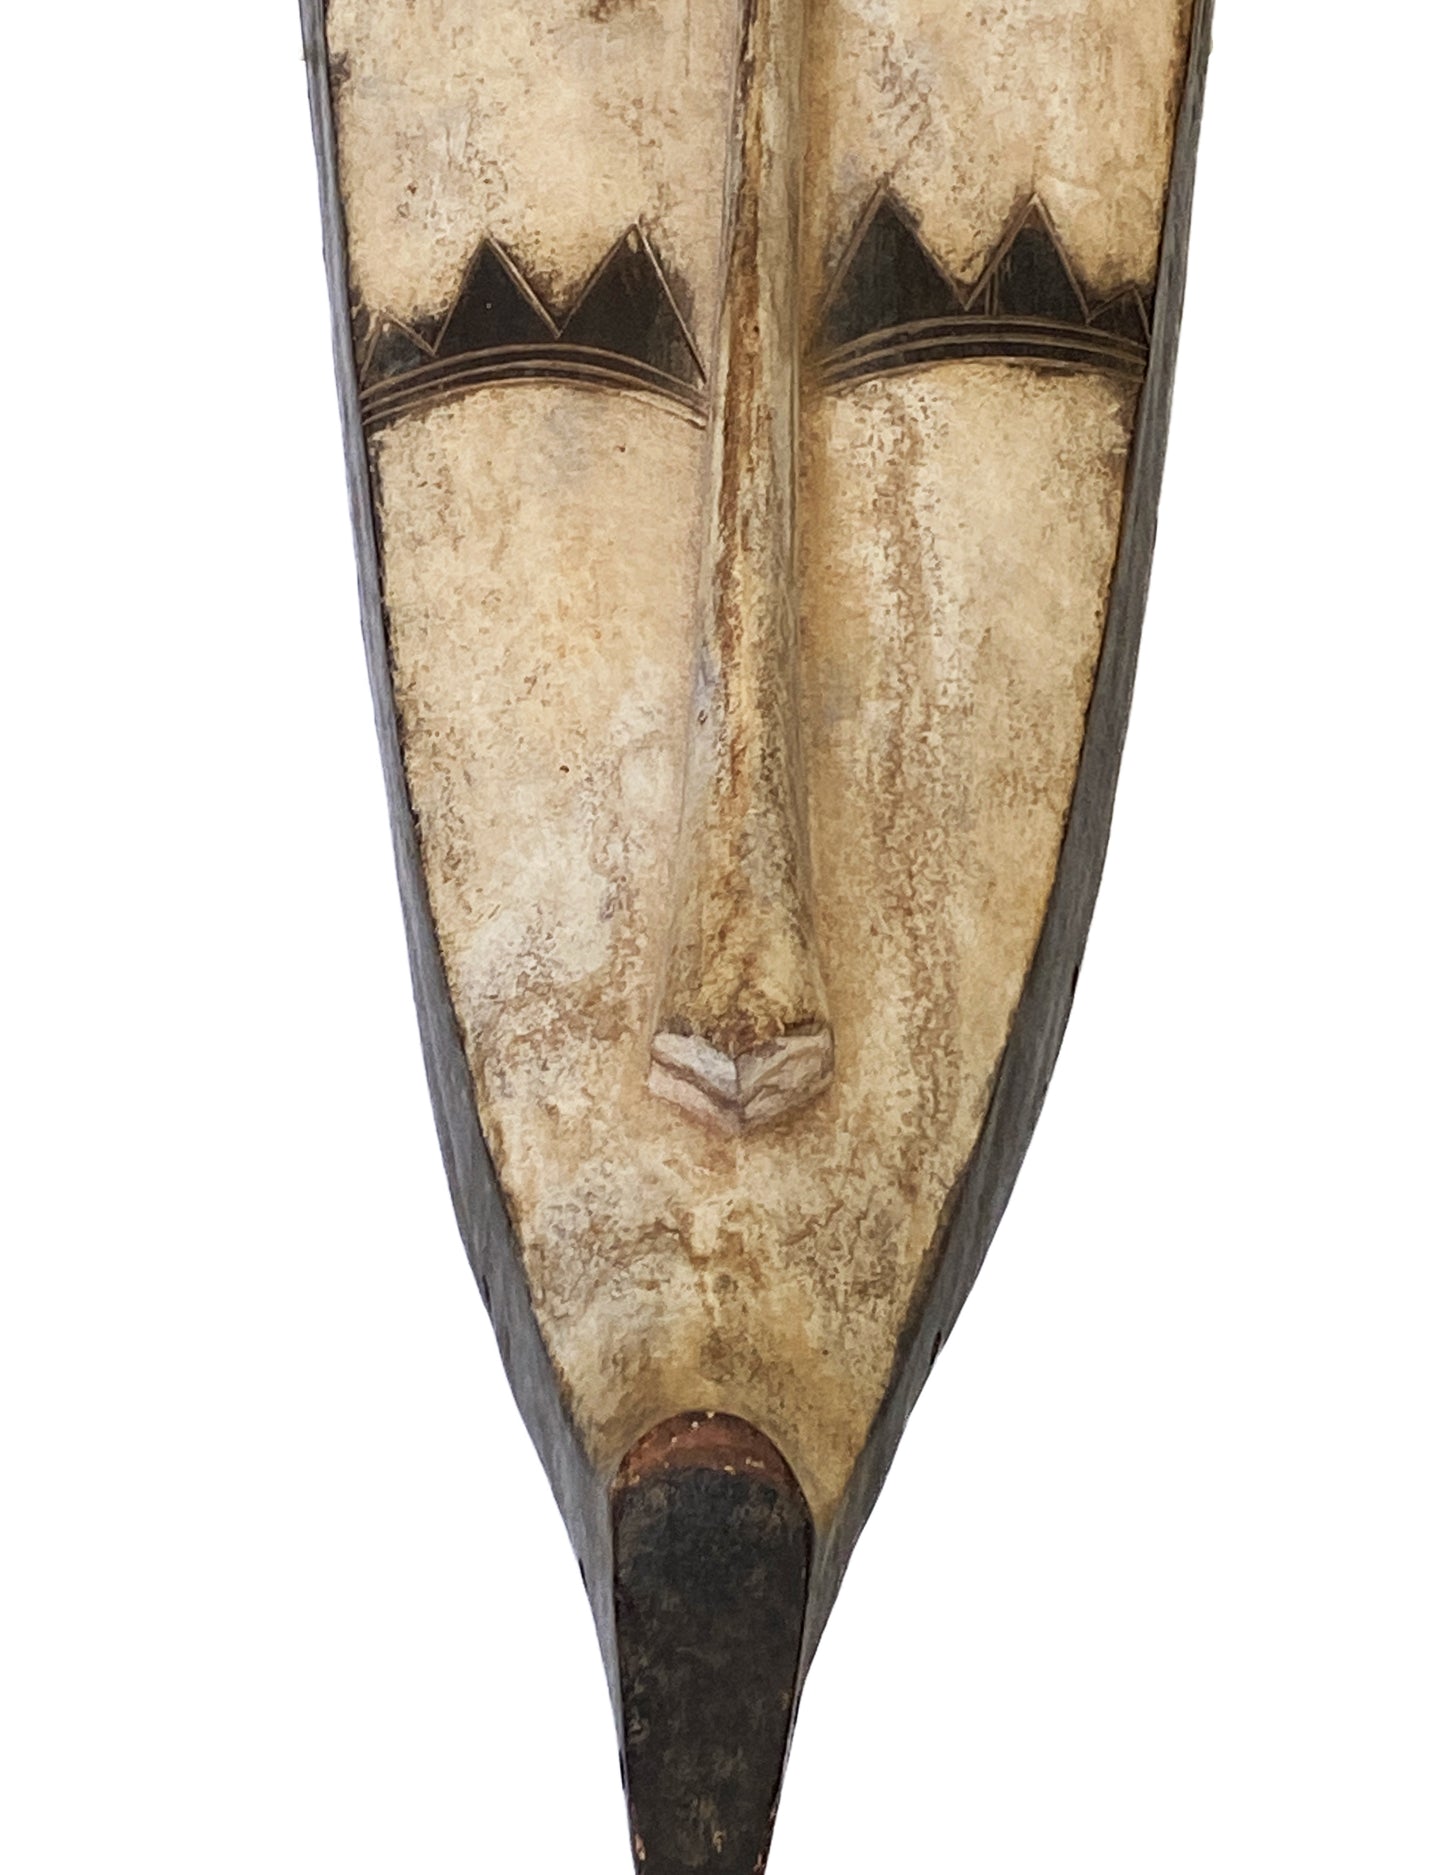 # 3459 Lg Fang Mask Elongated Face Gabon African Mask 31.25" H